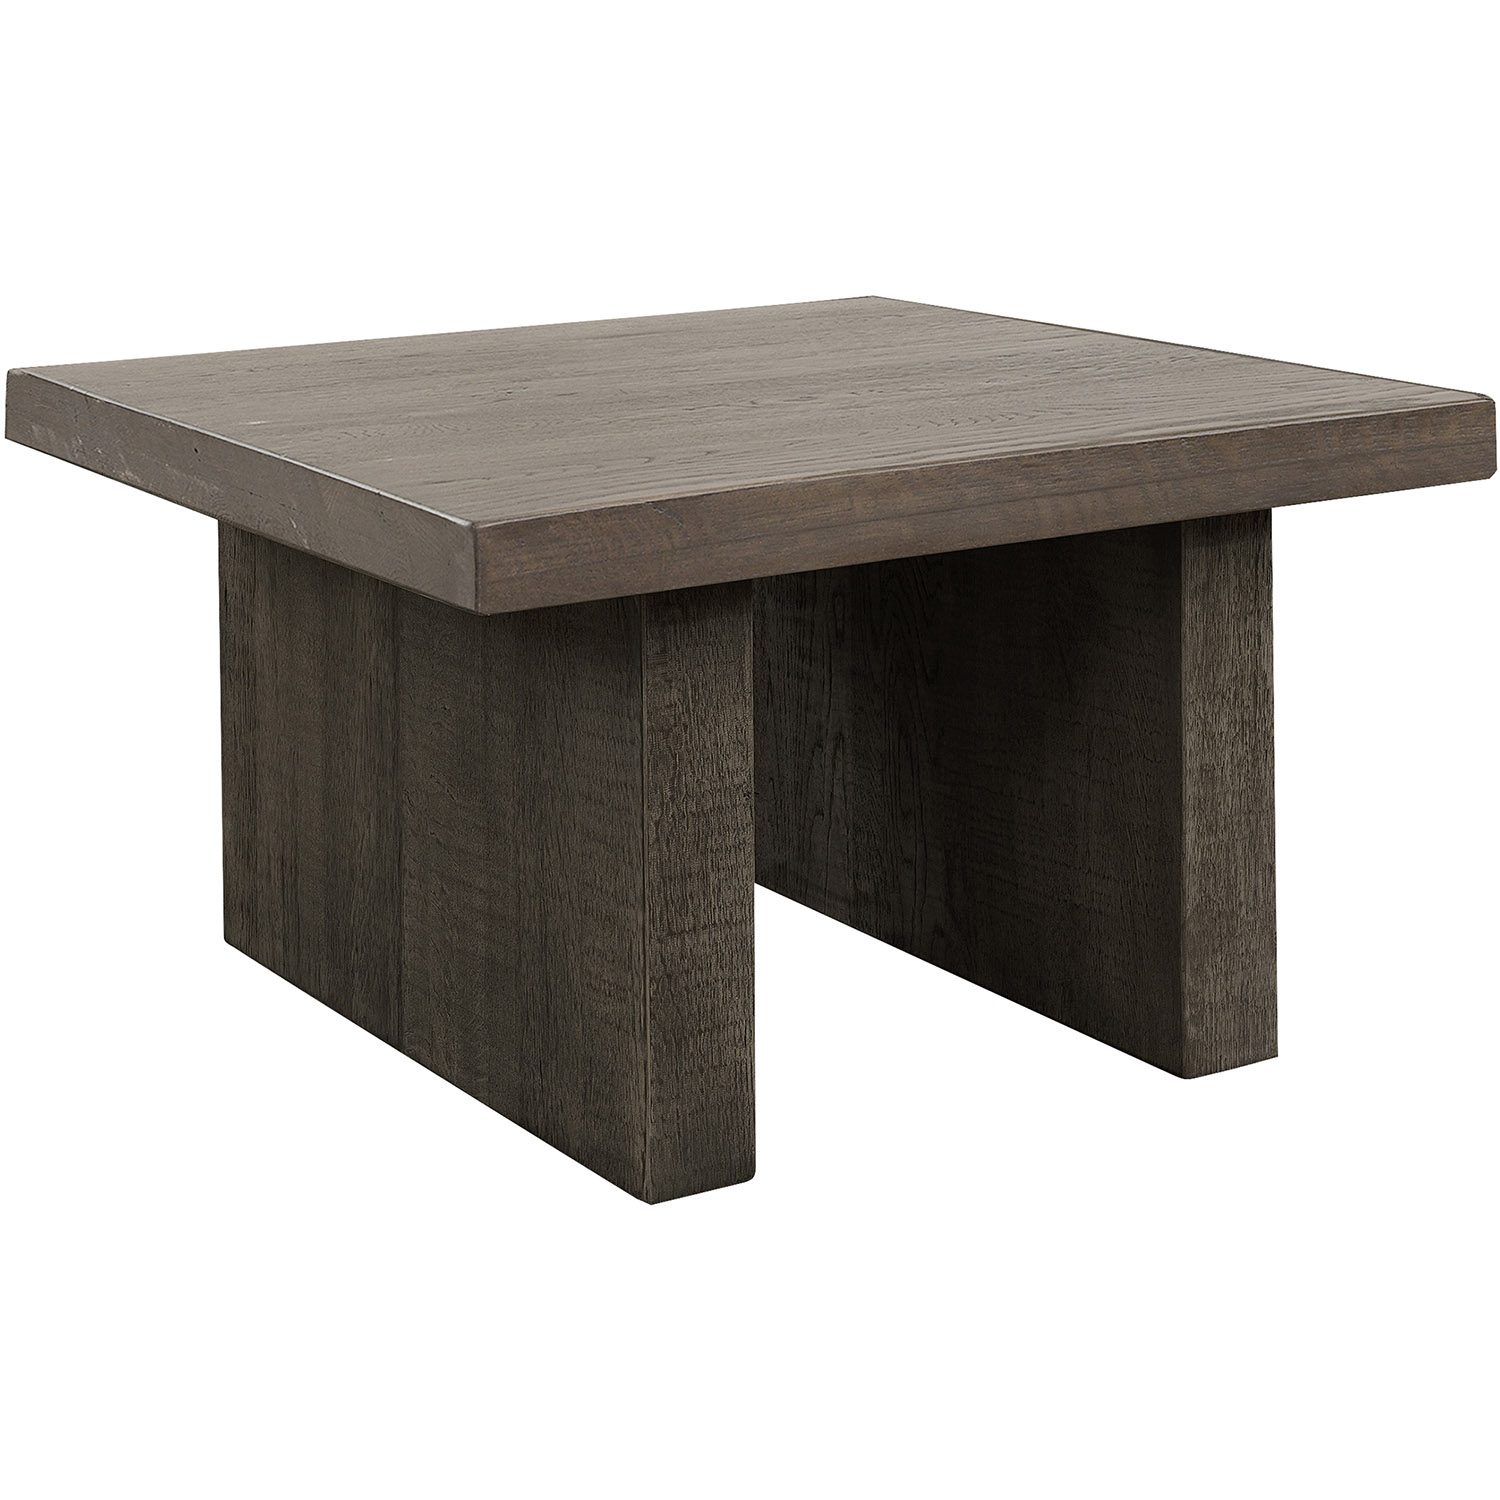 Ny bild på Plint soffbord från Artwood i färgen mörkbrunt.